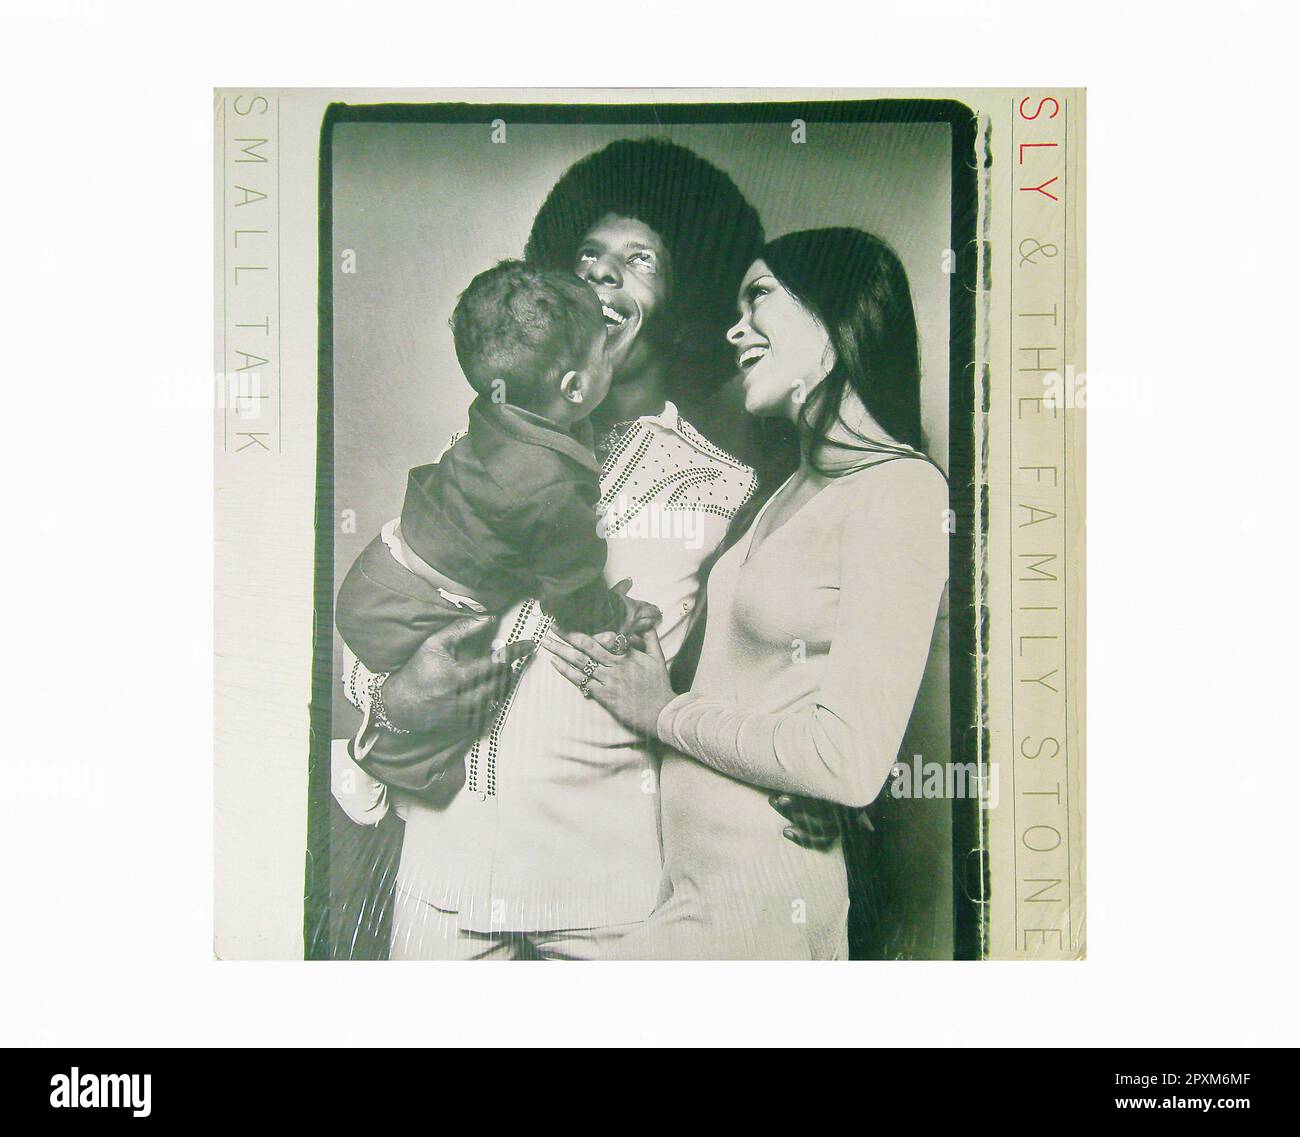 Sly & The Family Stone - Small Talk [1974] - Vintage Vinyl Record Sleeve Stock Photo